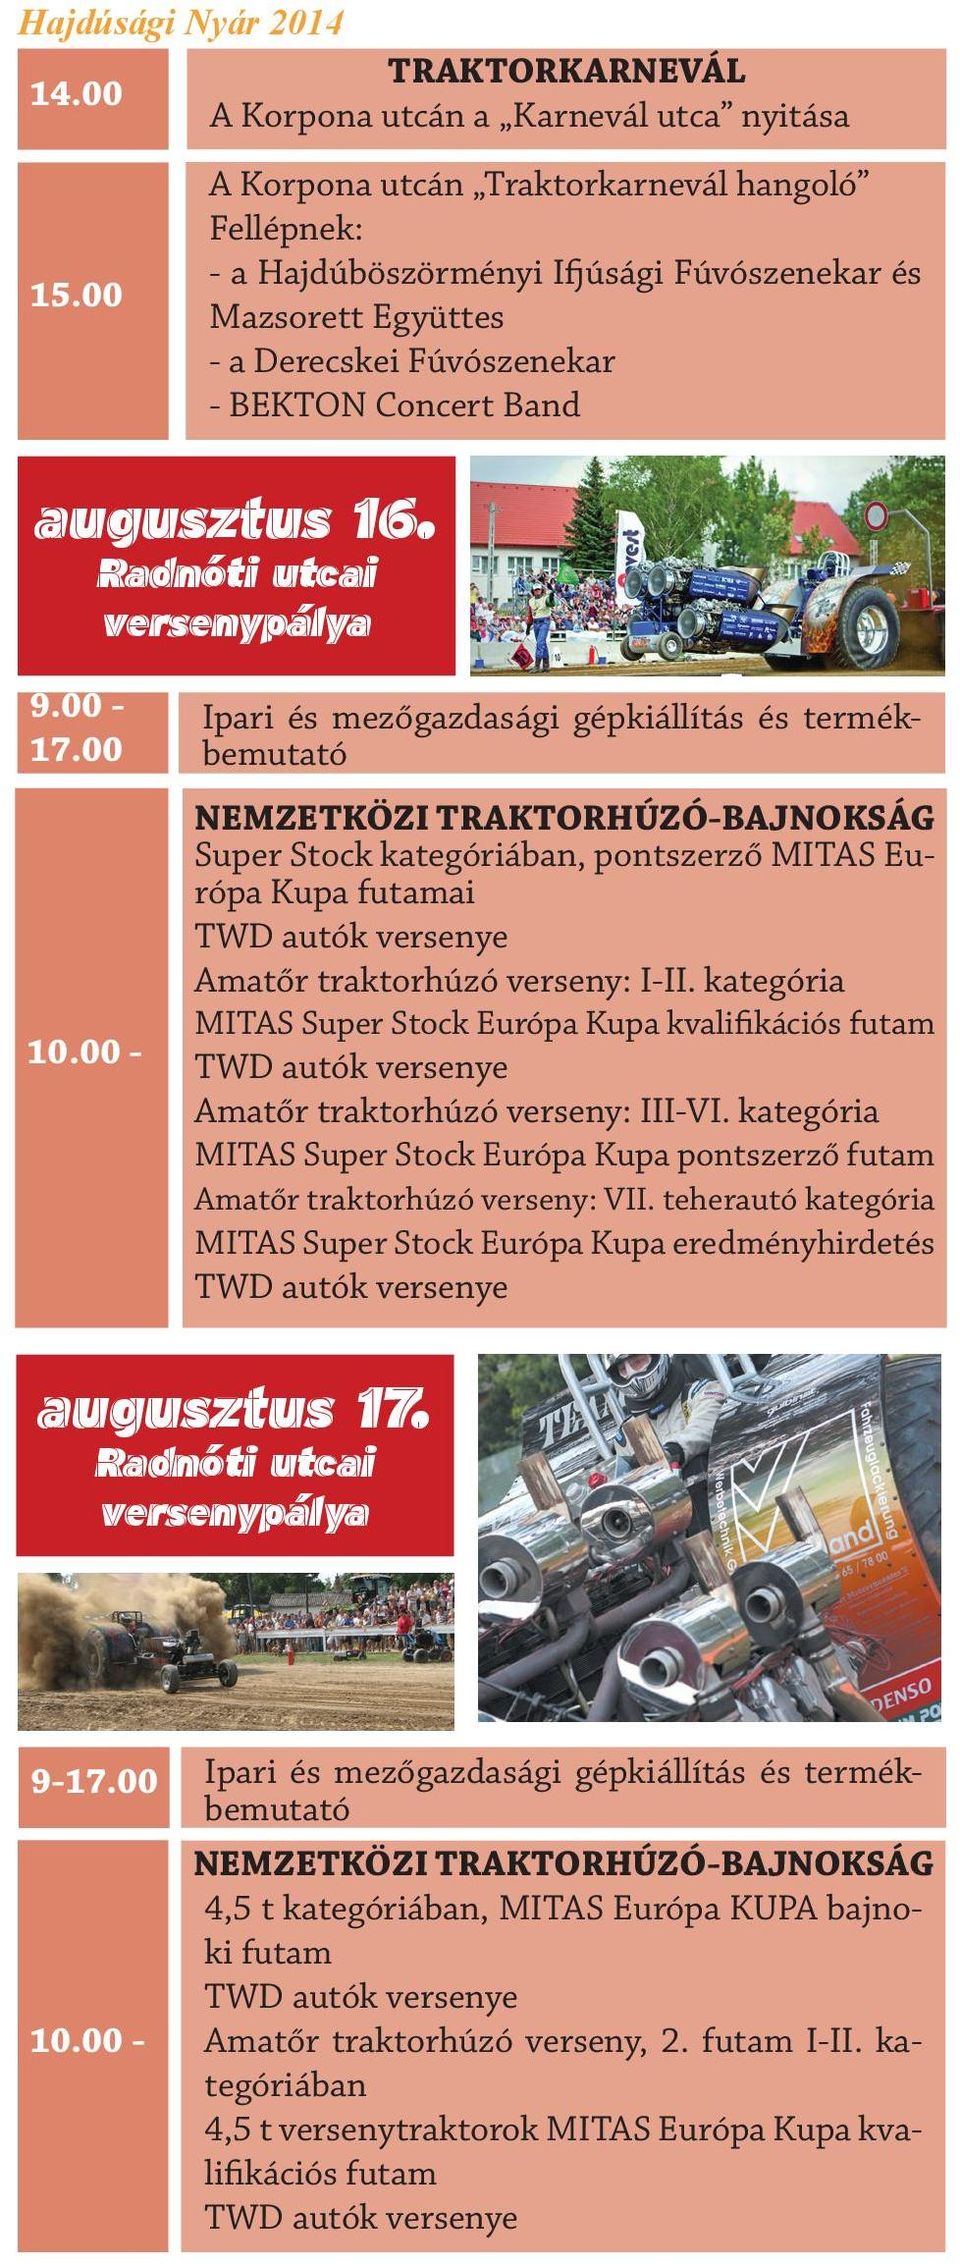 Radnóti utcai versenypálya 9.00-17.00 10.